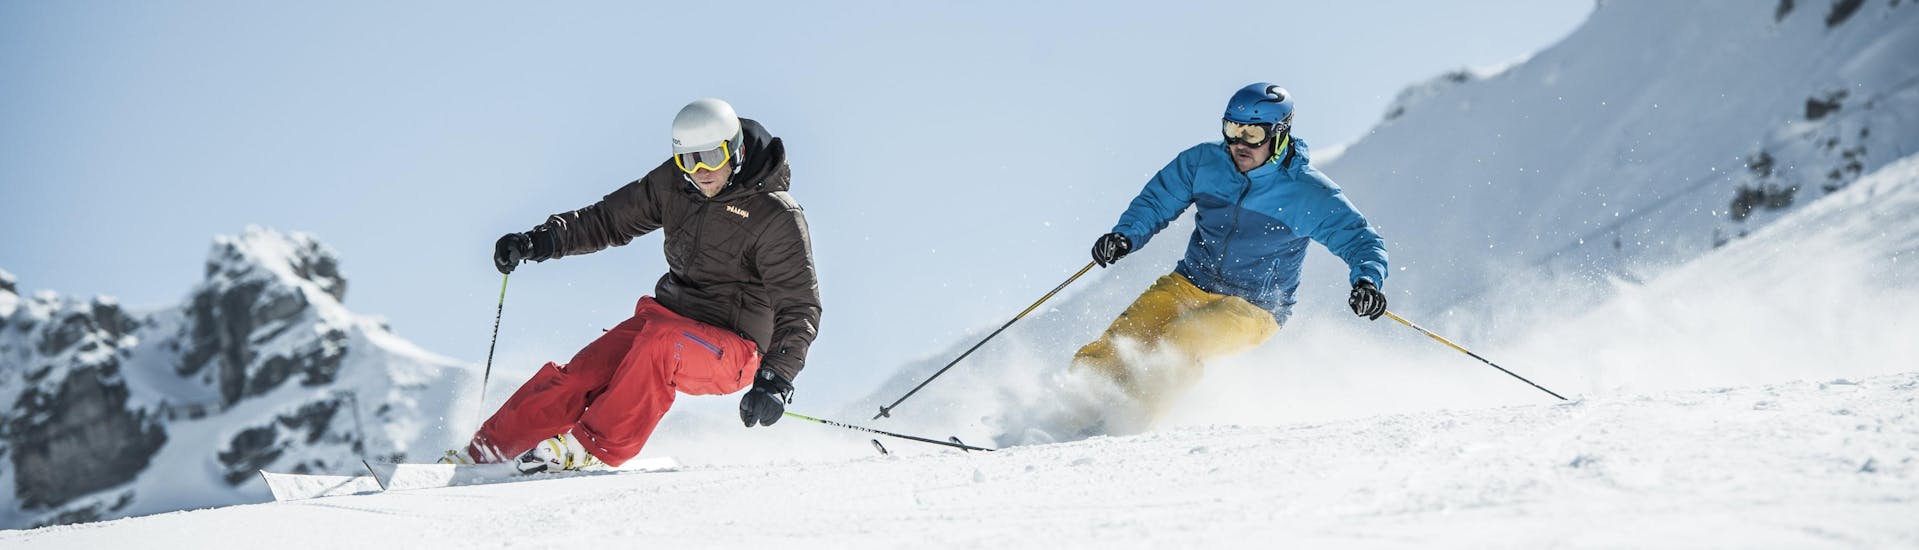 private-ski-lessons-SEM-hero